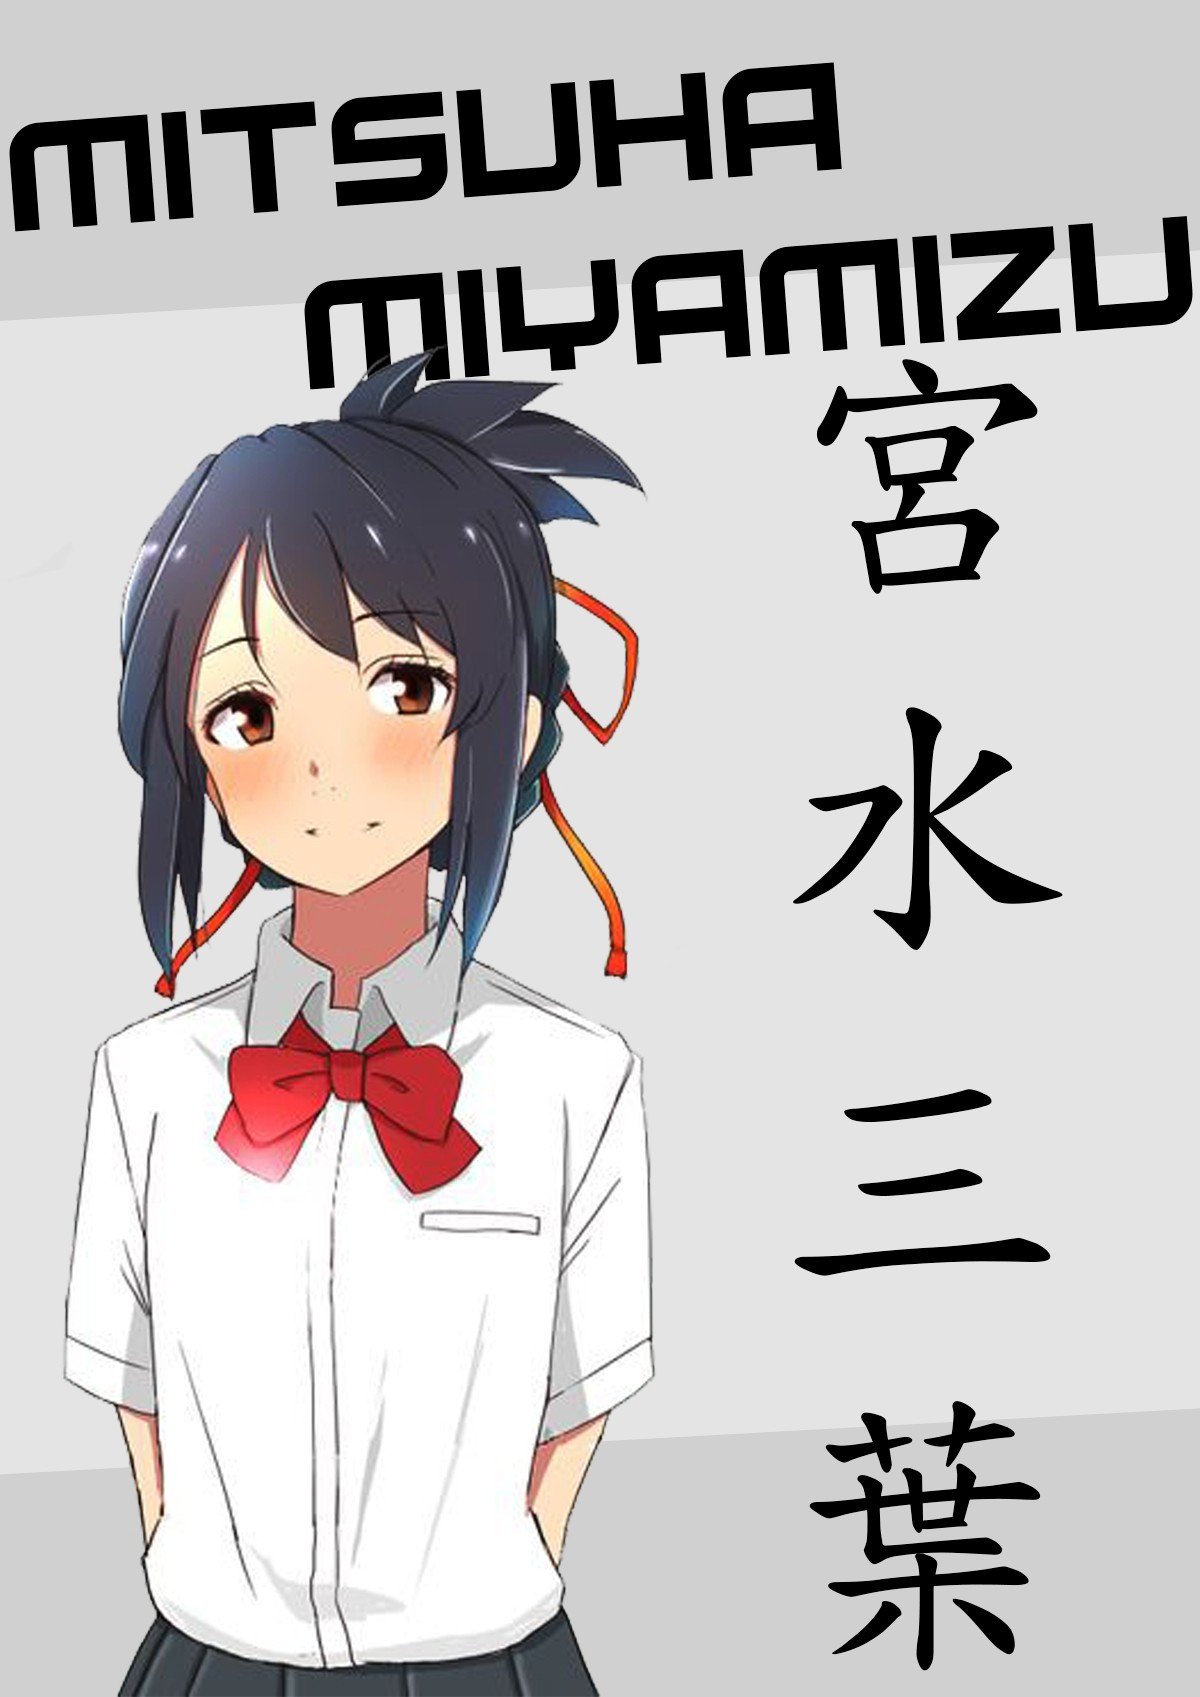 anime, Anime girls, Miyamizu Mitsuha, Your name. Wallpaper